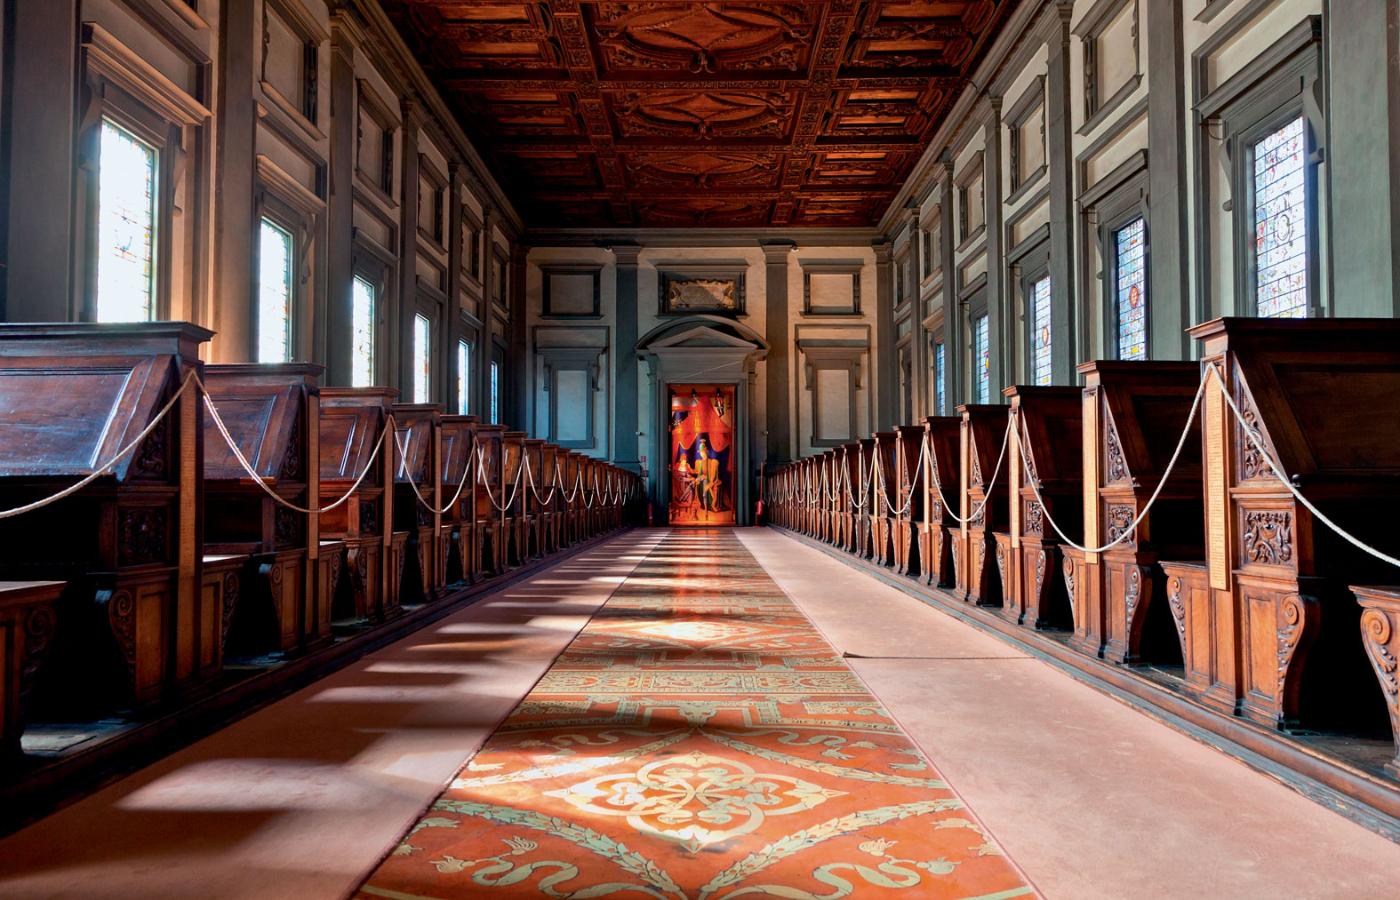 Lektorium biblioteki Laurenziana we Florencji; budynek został zaprojektowany przez Michała Anioła na zlecenie papieża Klemensa VII w 1524 r.